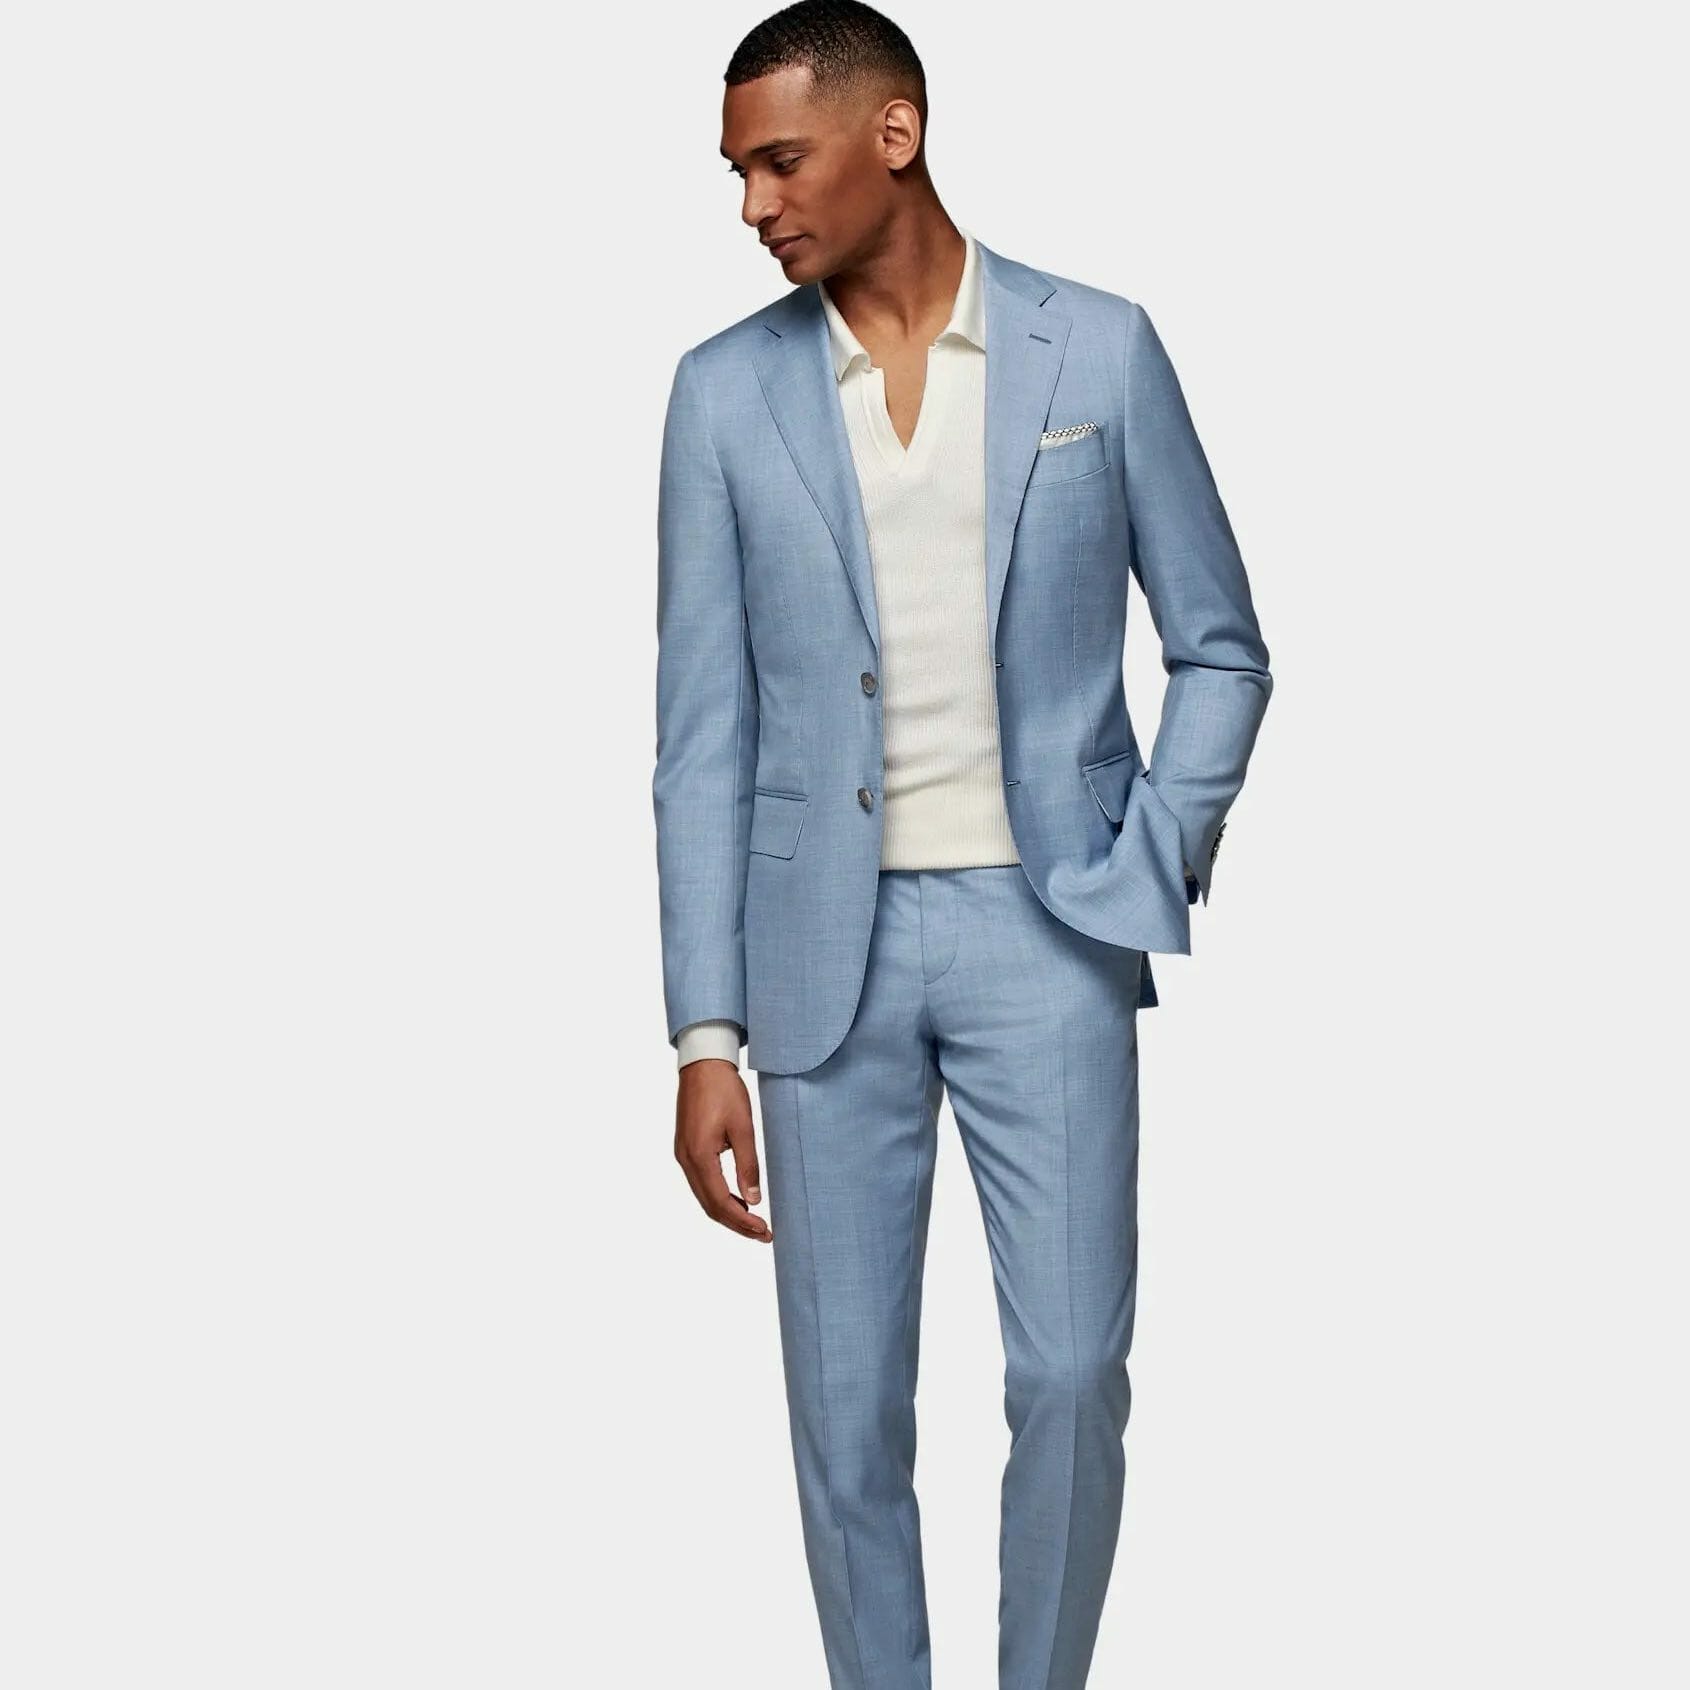 Blue suit with light blue blouse.